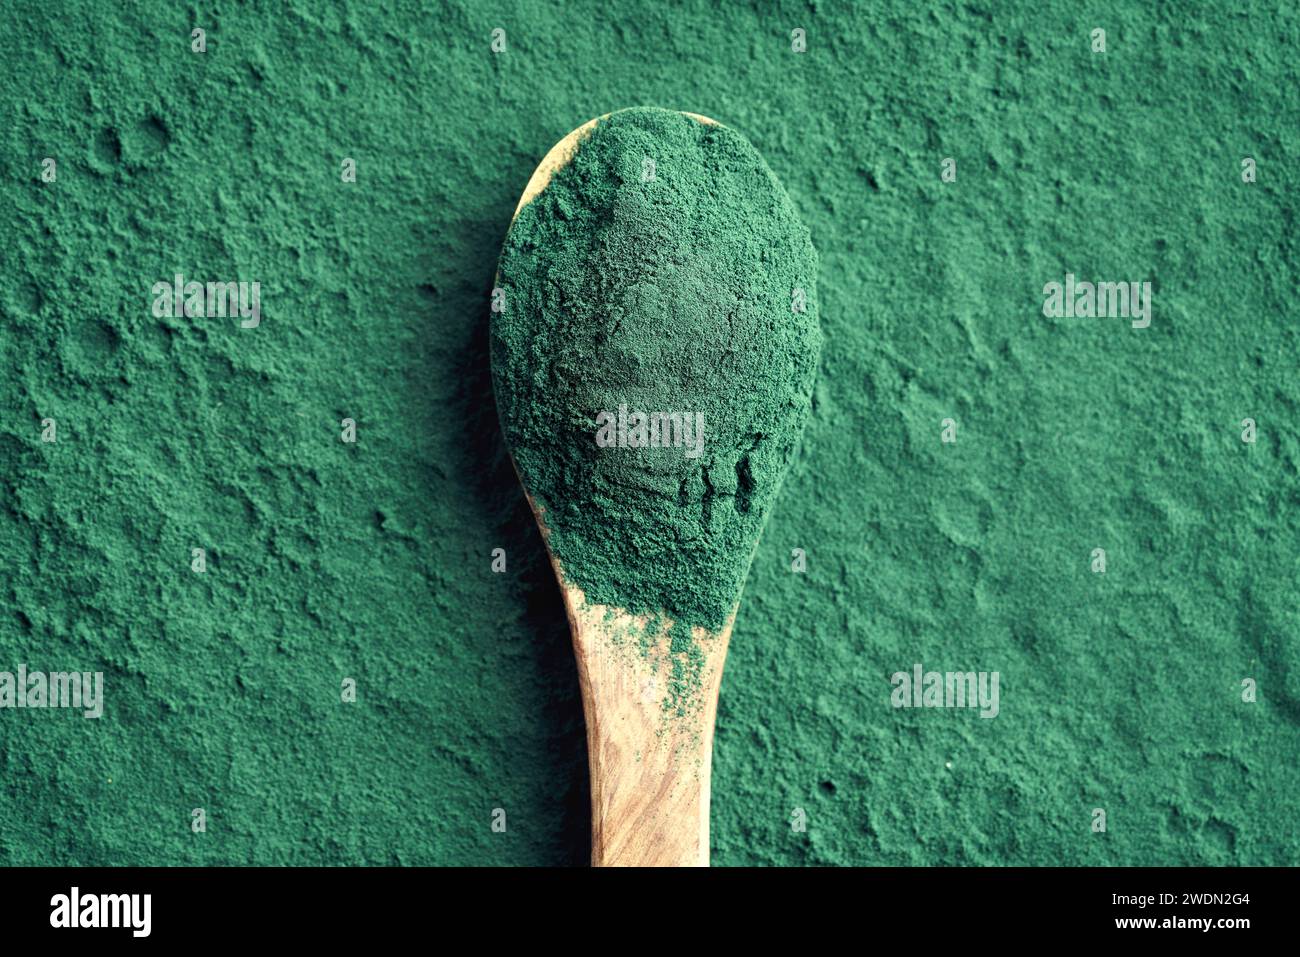 Polvere di spirulina verde su un cucchiaio - integratore alimentare, vista dall'alto Foto Stock